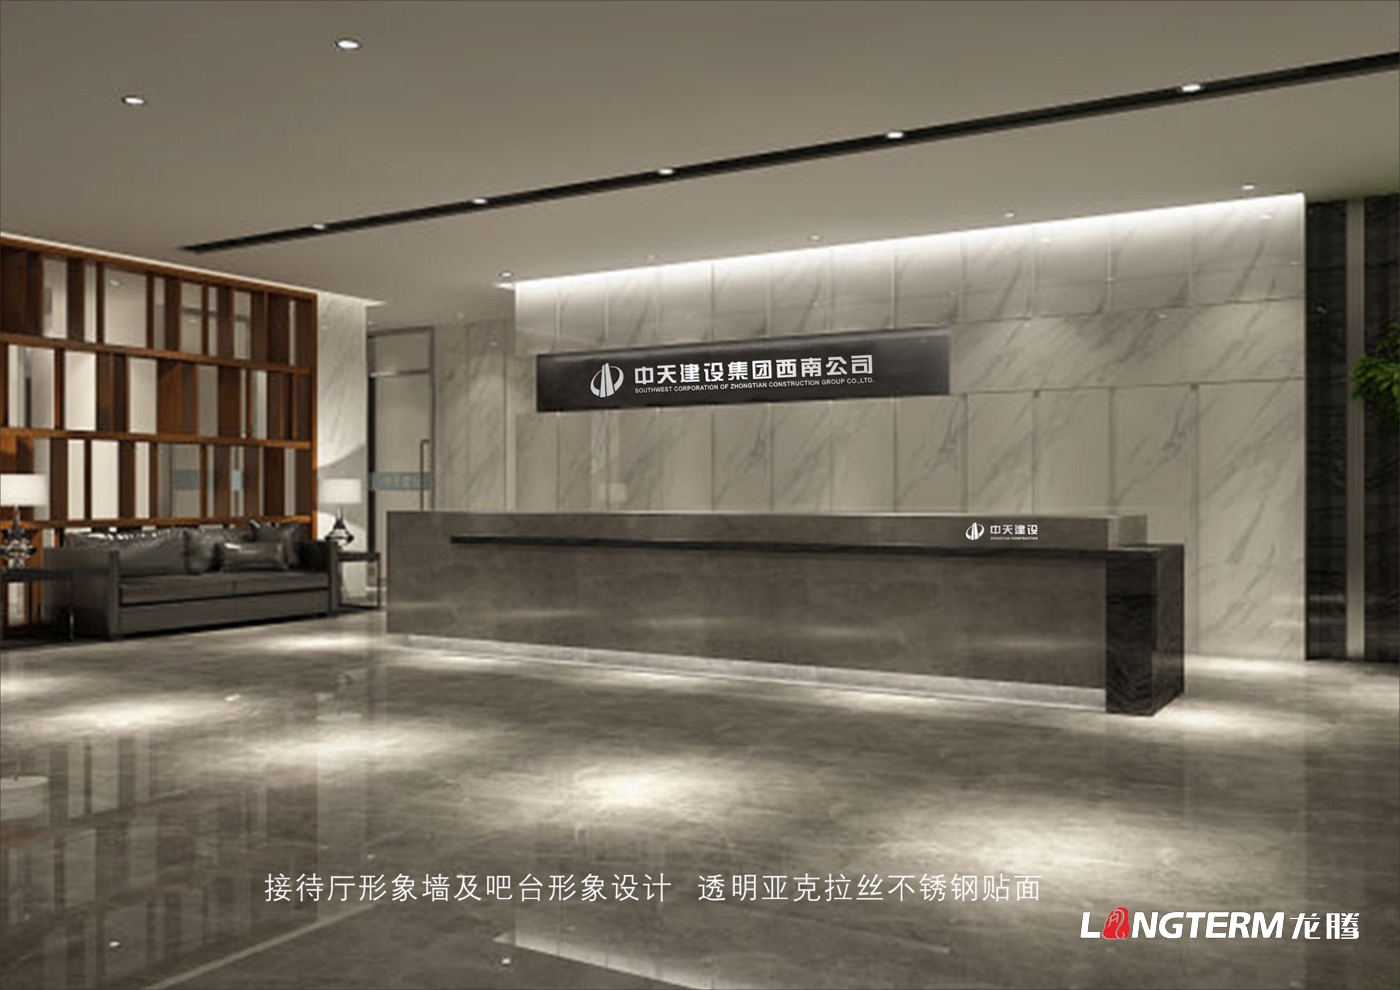 中天建设集团西南公司办公区形象策划设计及走廊企宣装饰风格设计